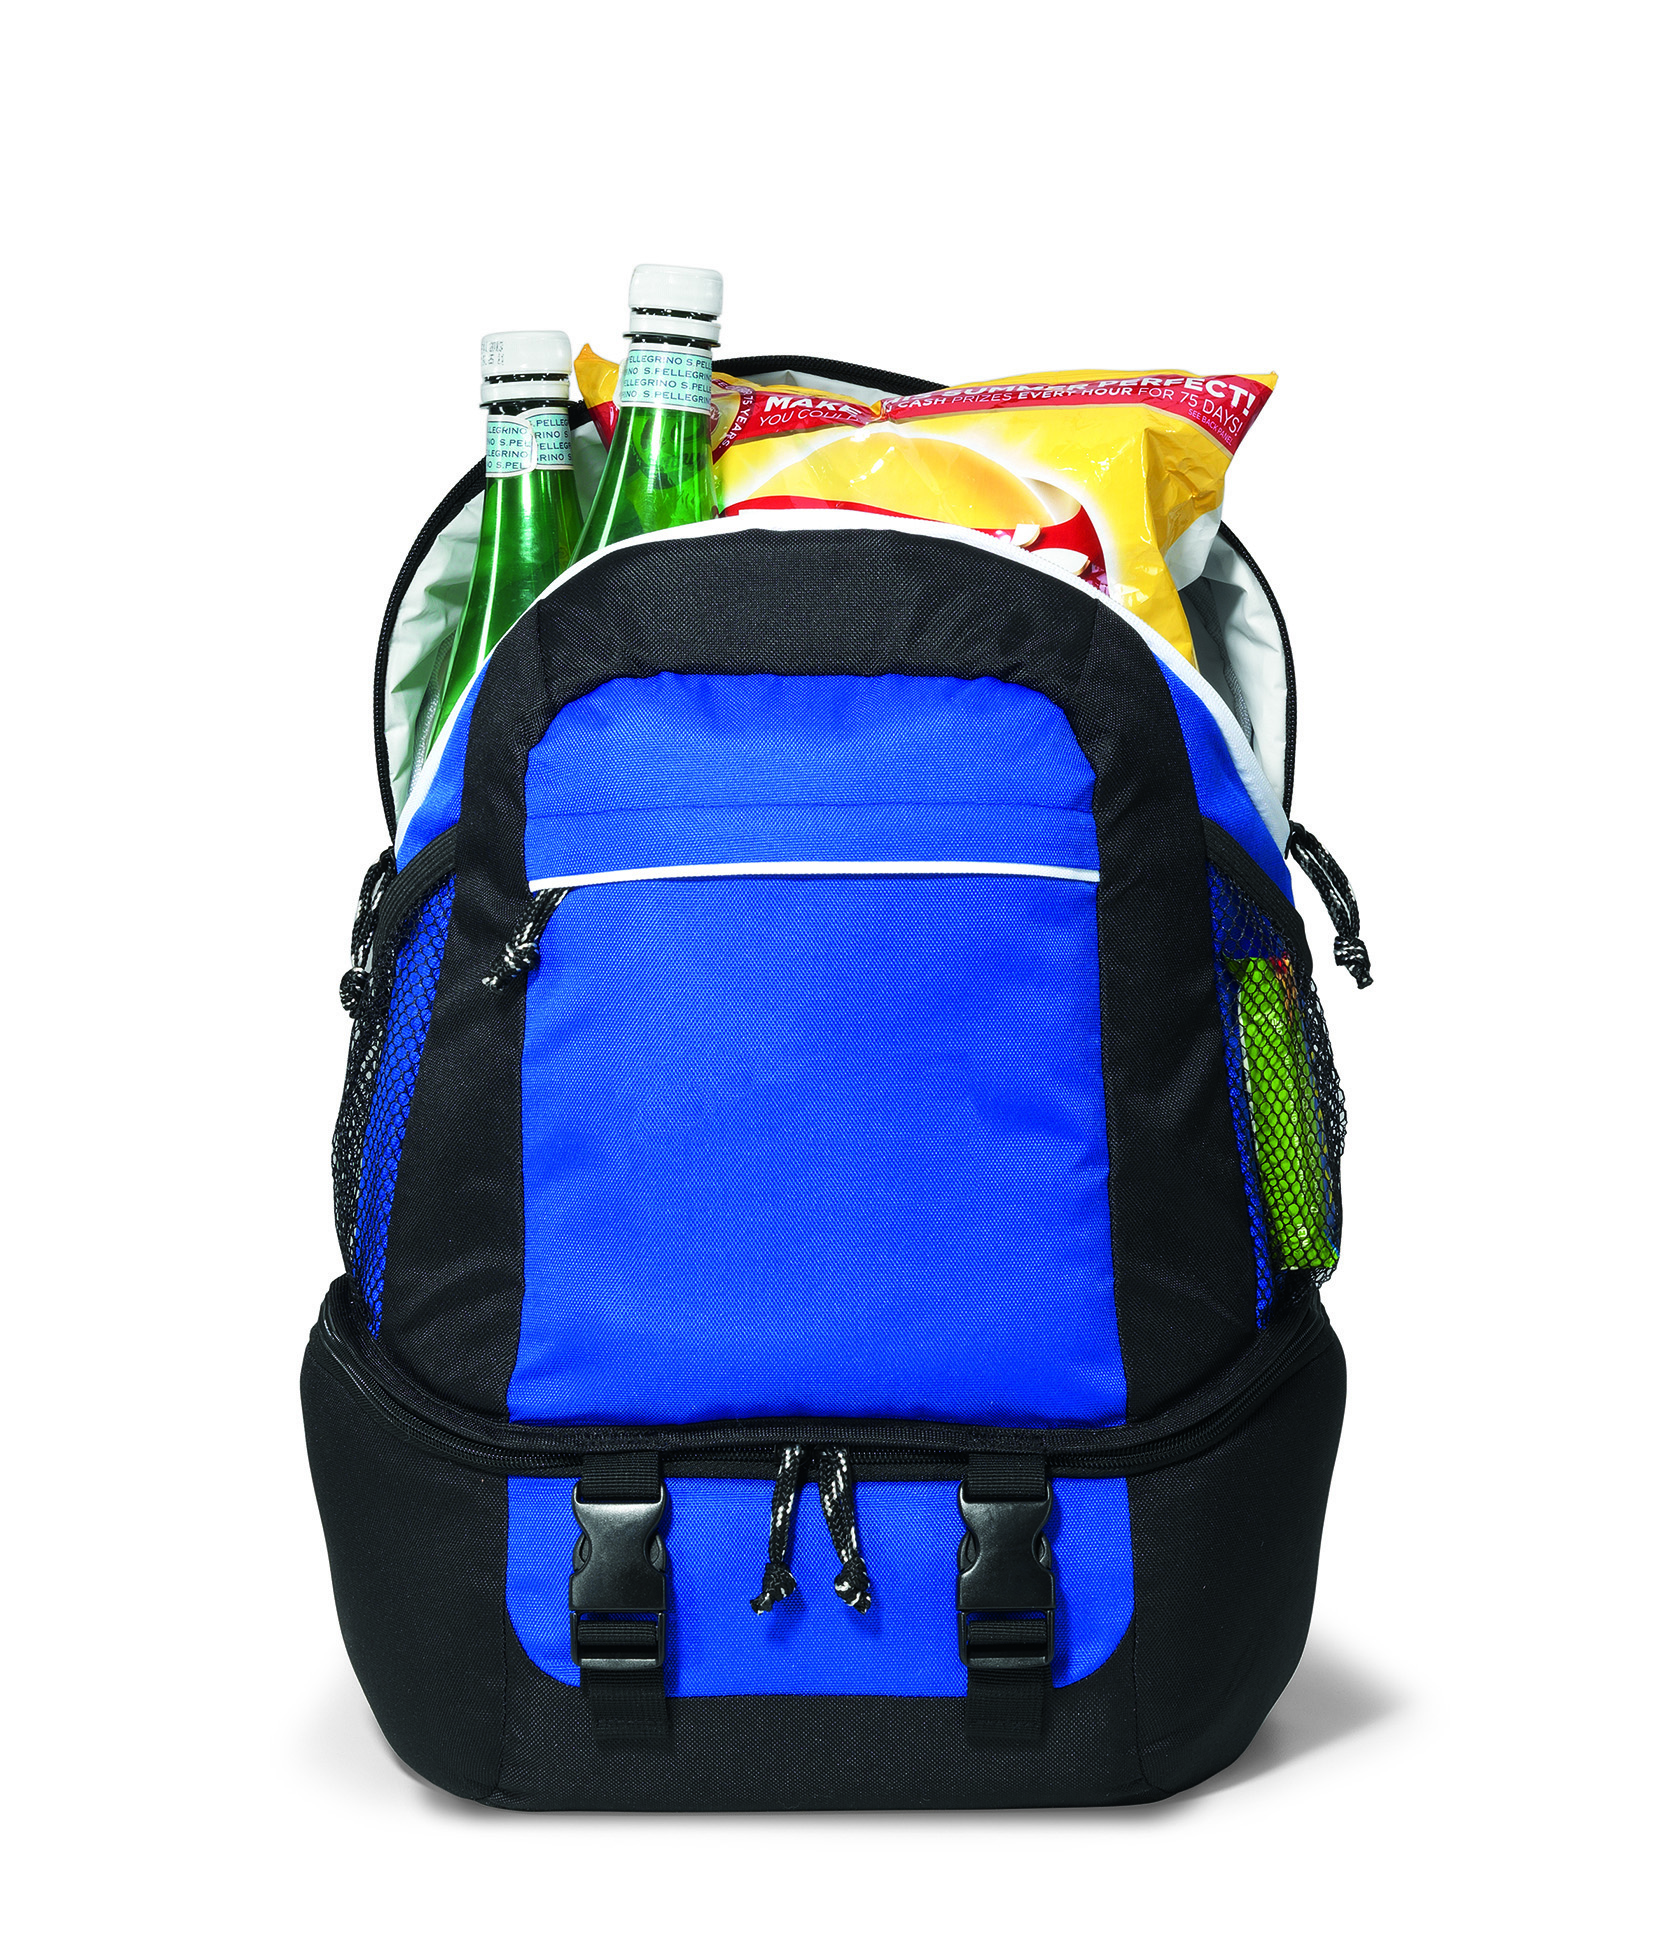 Gemline 9287 - Summit Backpack Cooler